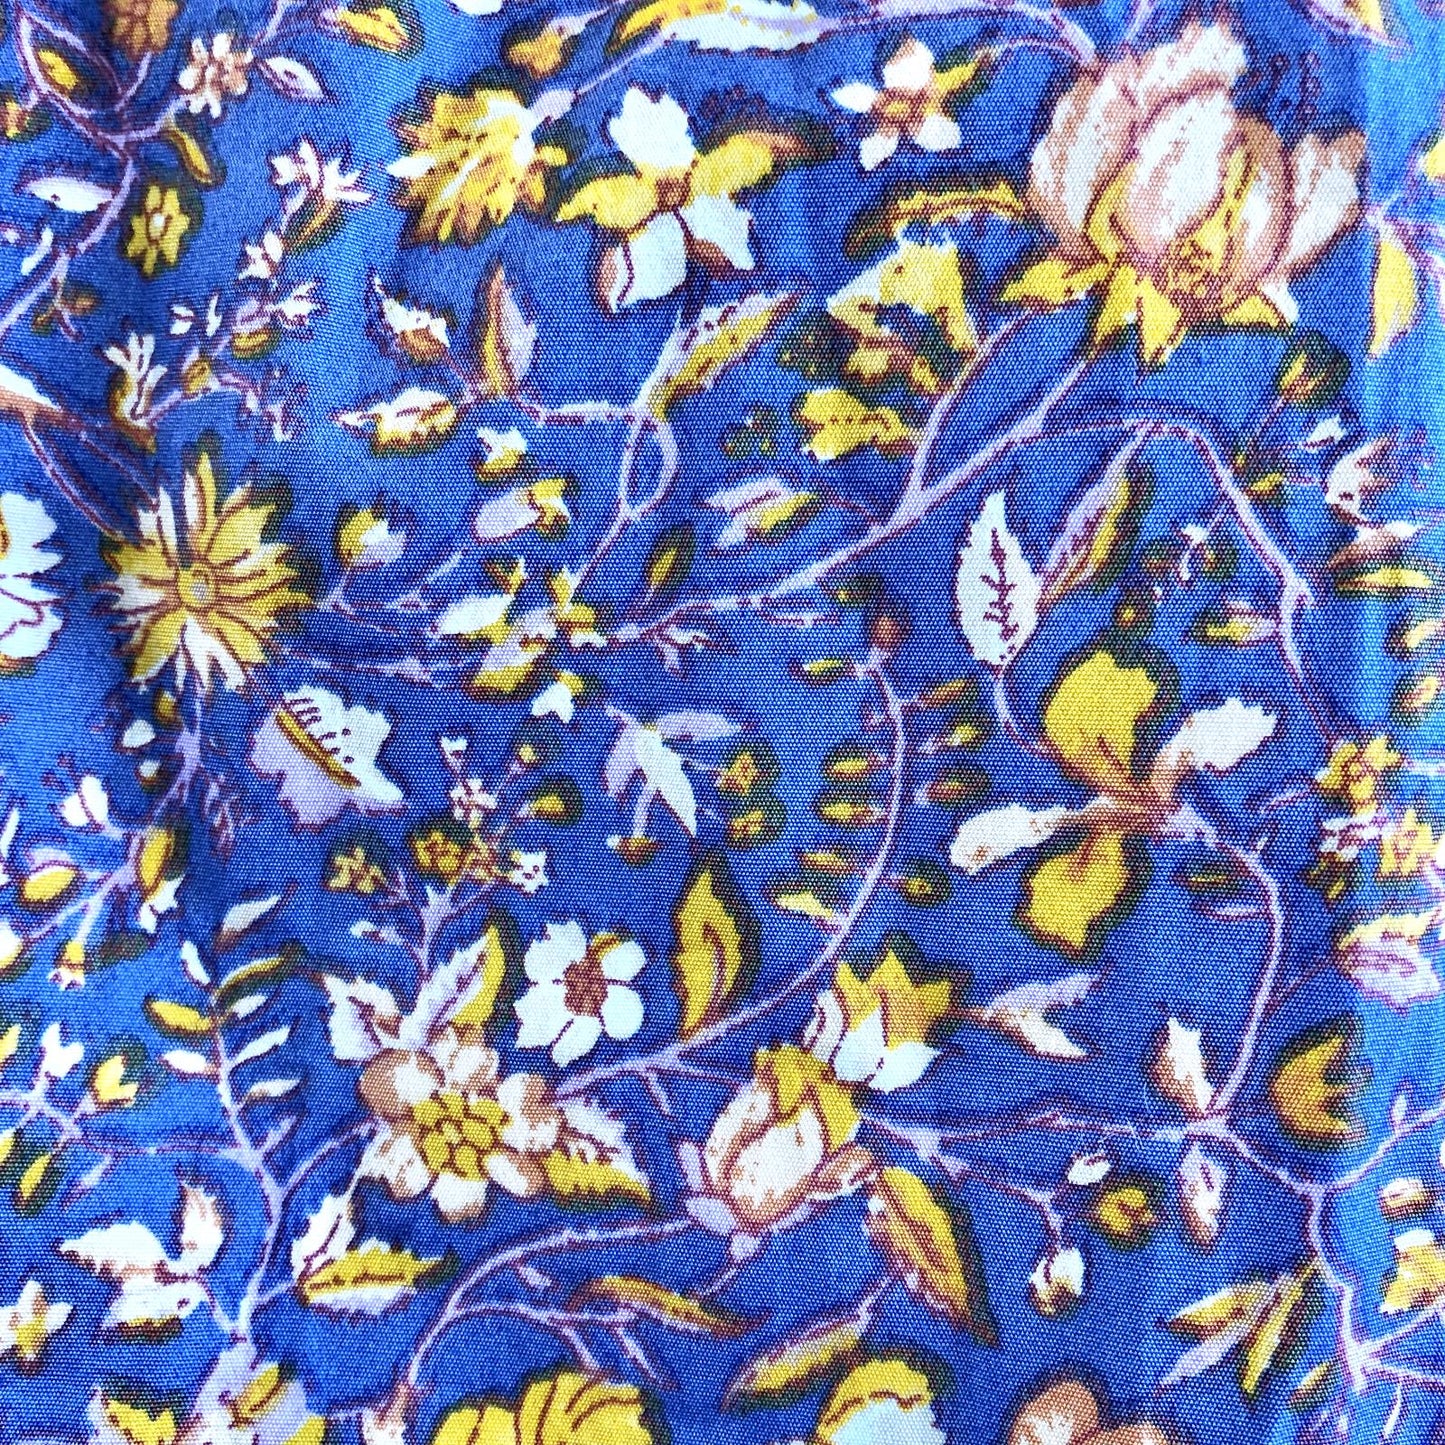 2 - J Crew NEW $168 Midnight Floral Purple Cutout Cotton Poplin Dress 0105MR